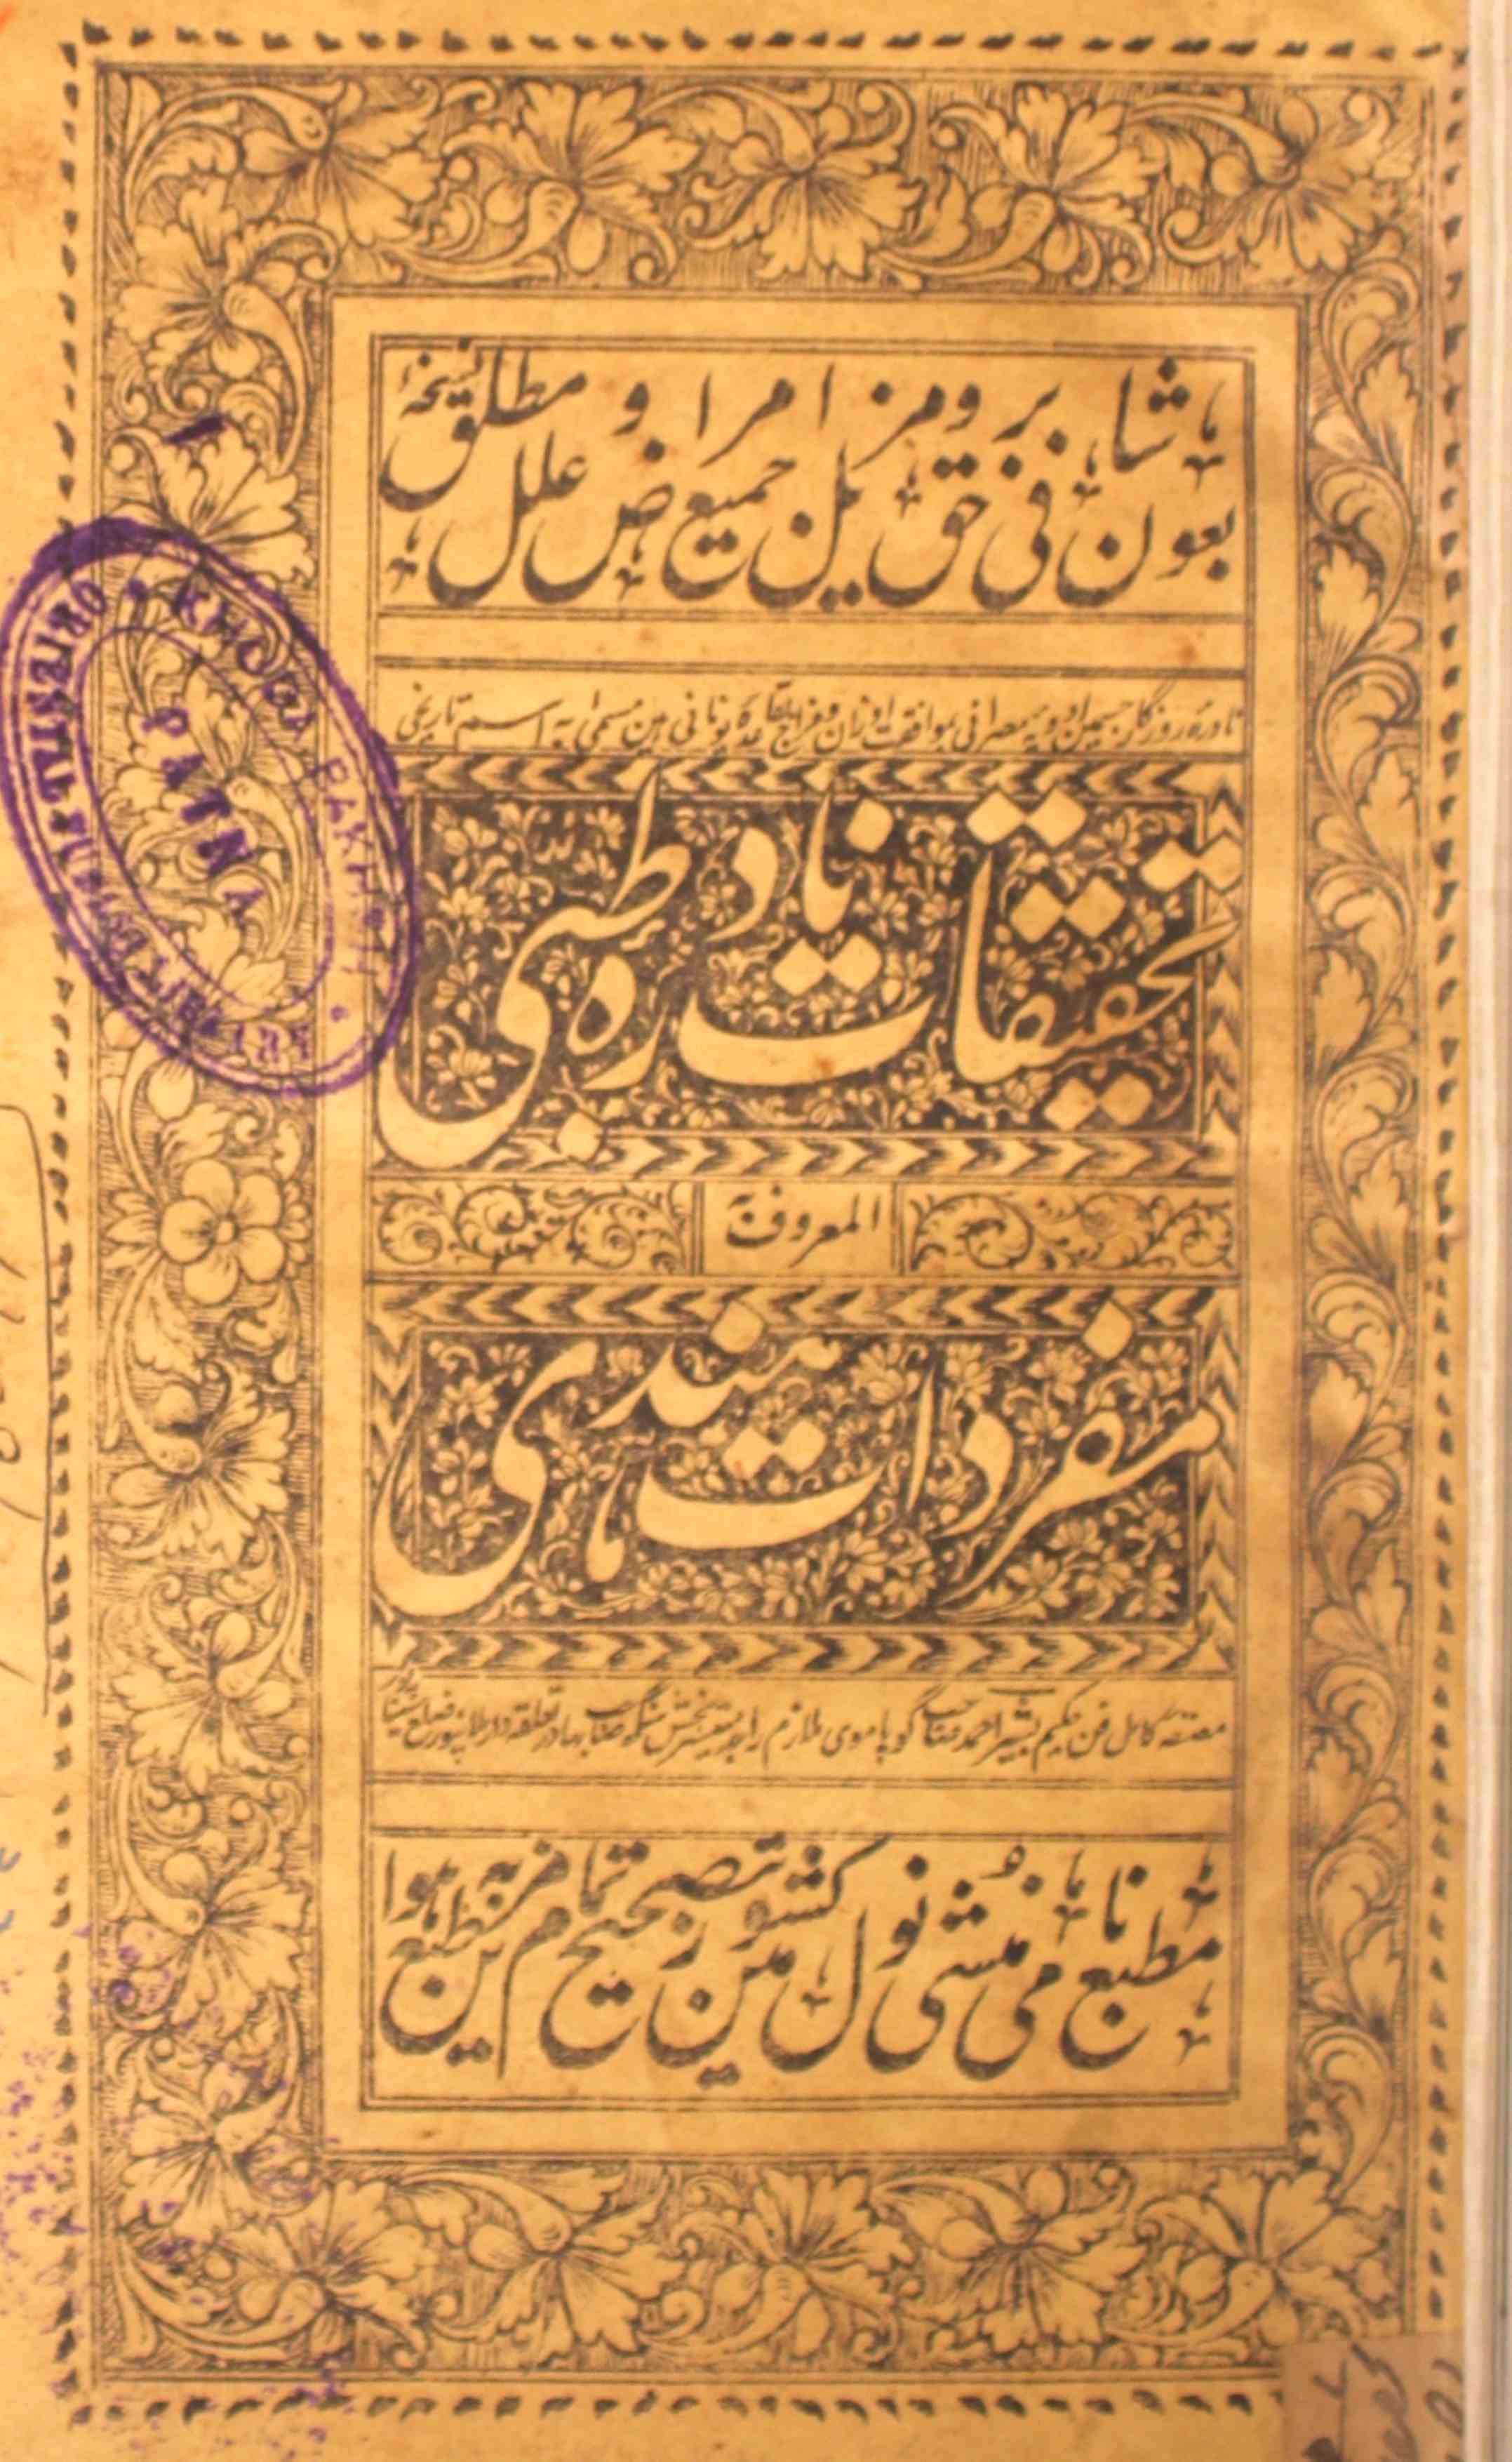 Tahqiqat-e-Nadra Tibbi Al-Maroof Ba Mufradat-e-Hindi